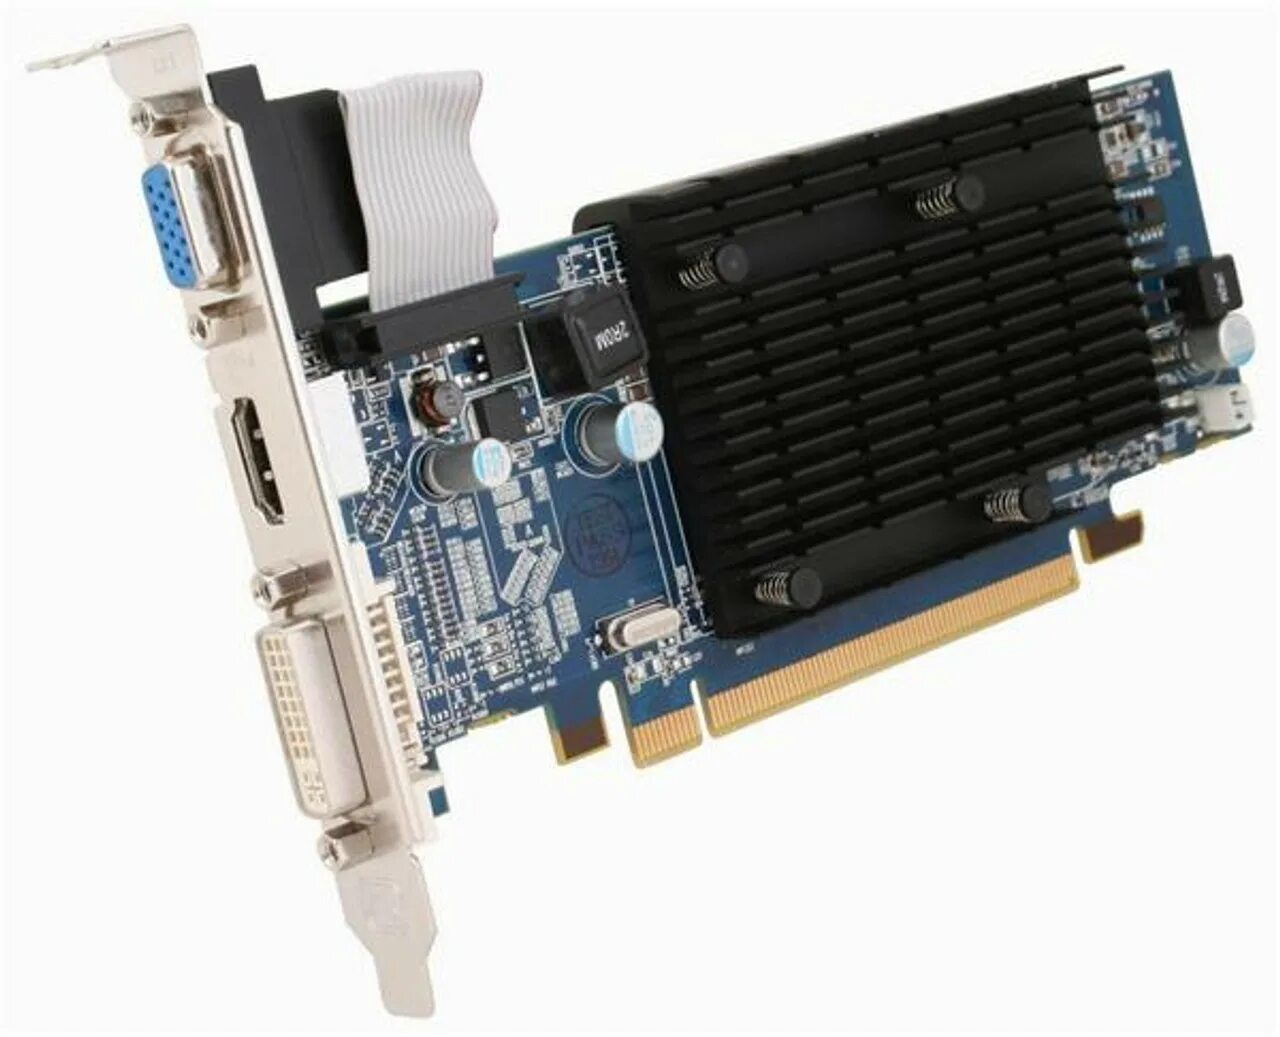 Hd4550 1gb. AMD Radeon 4550. Ati radeon 4300 series